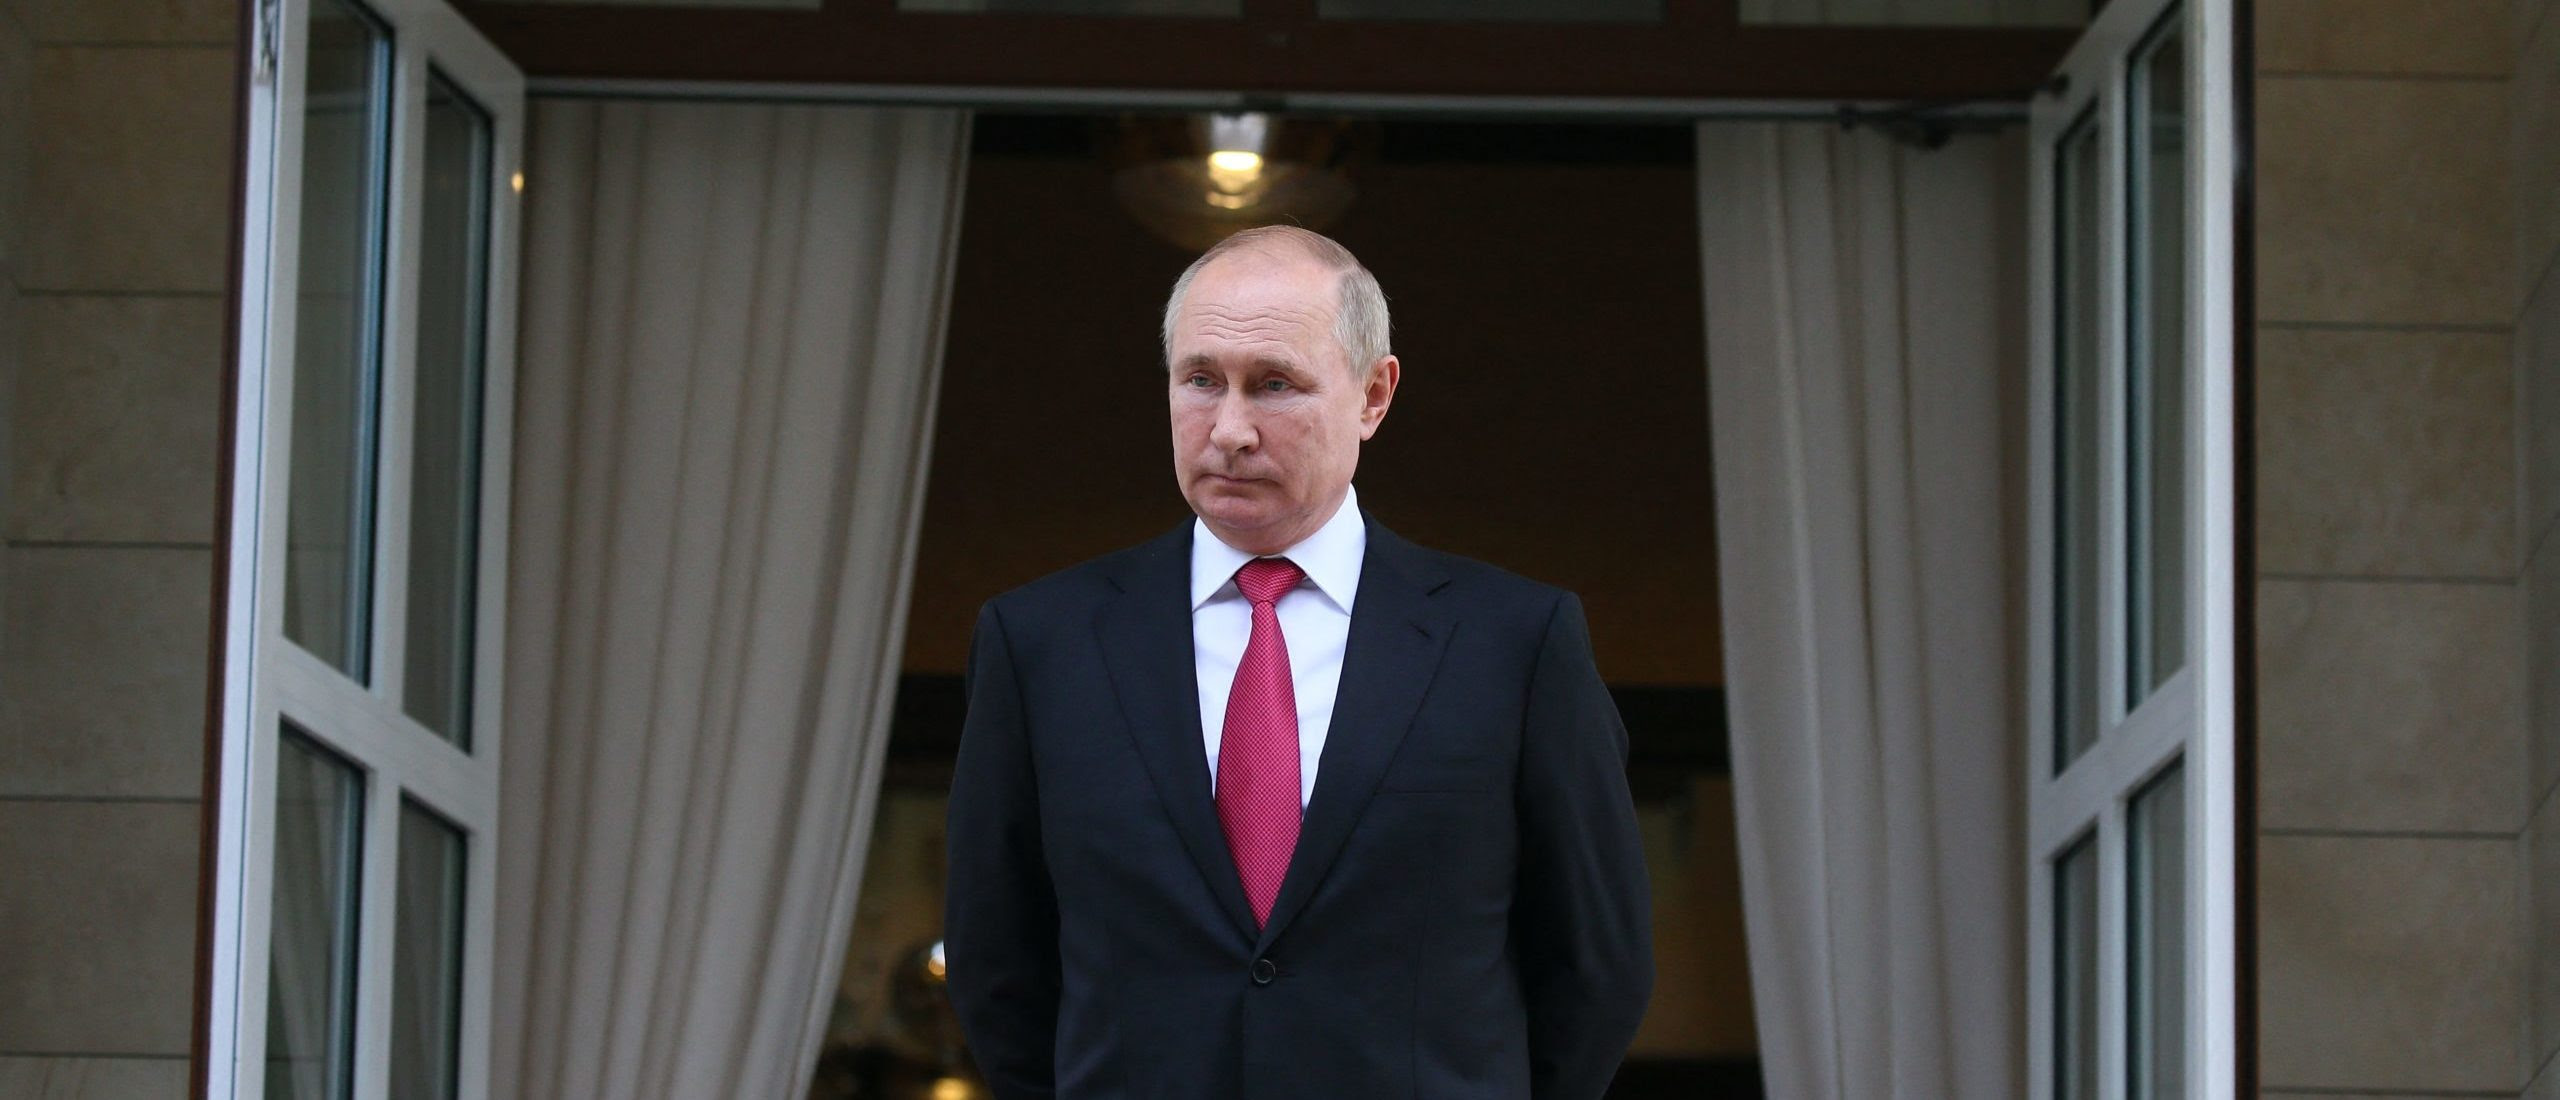 Russia Insults Biden After He Called Putin A ‘War Criminal’